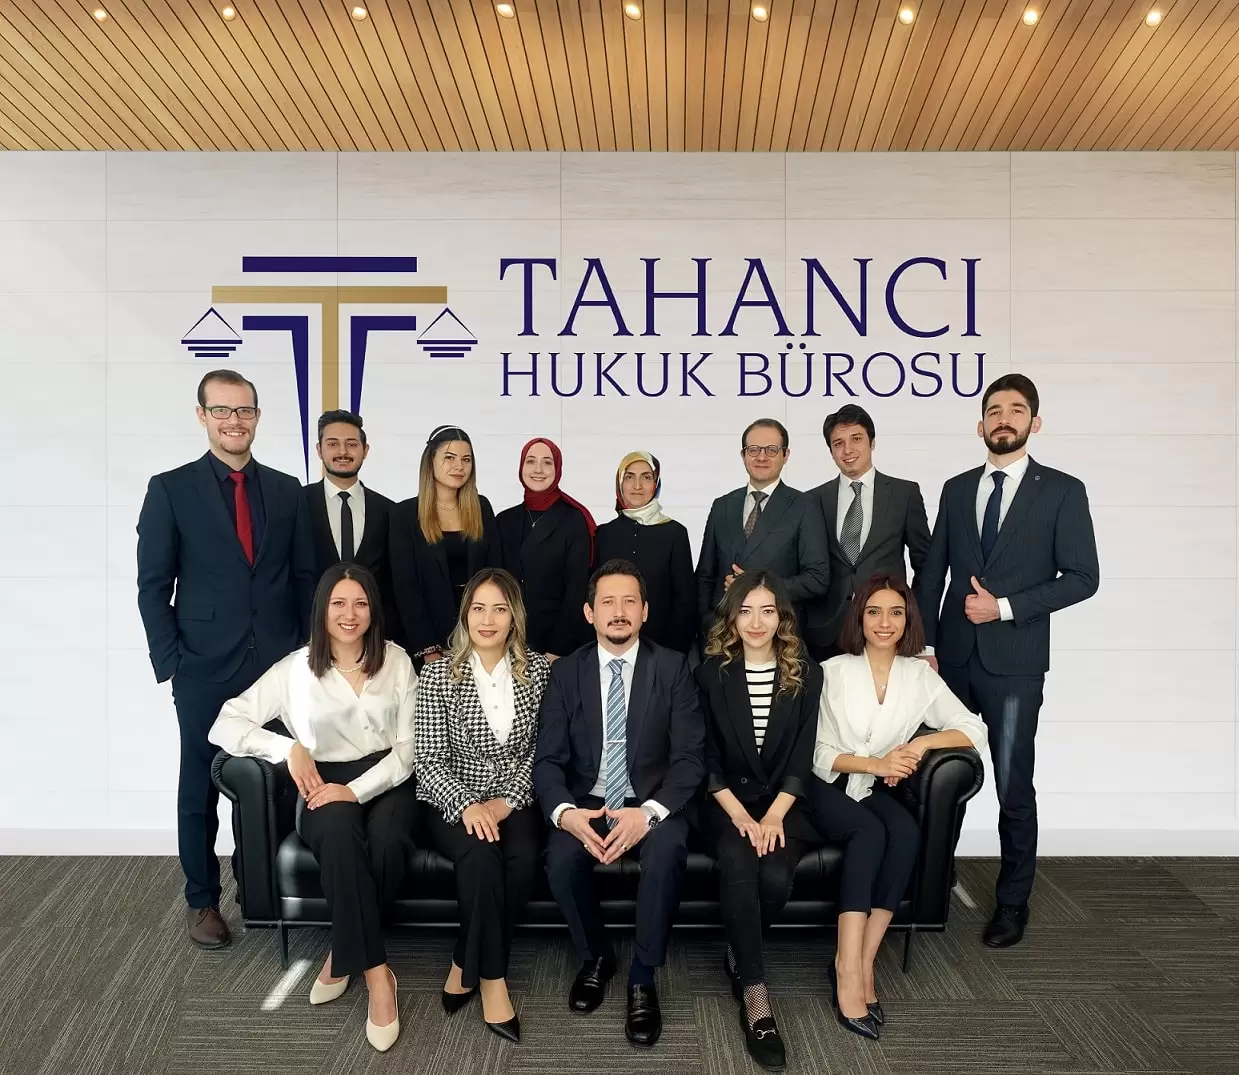 tahanci ekip Tahancı Hukuk Bürosu - Ankara Avukat